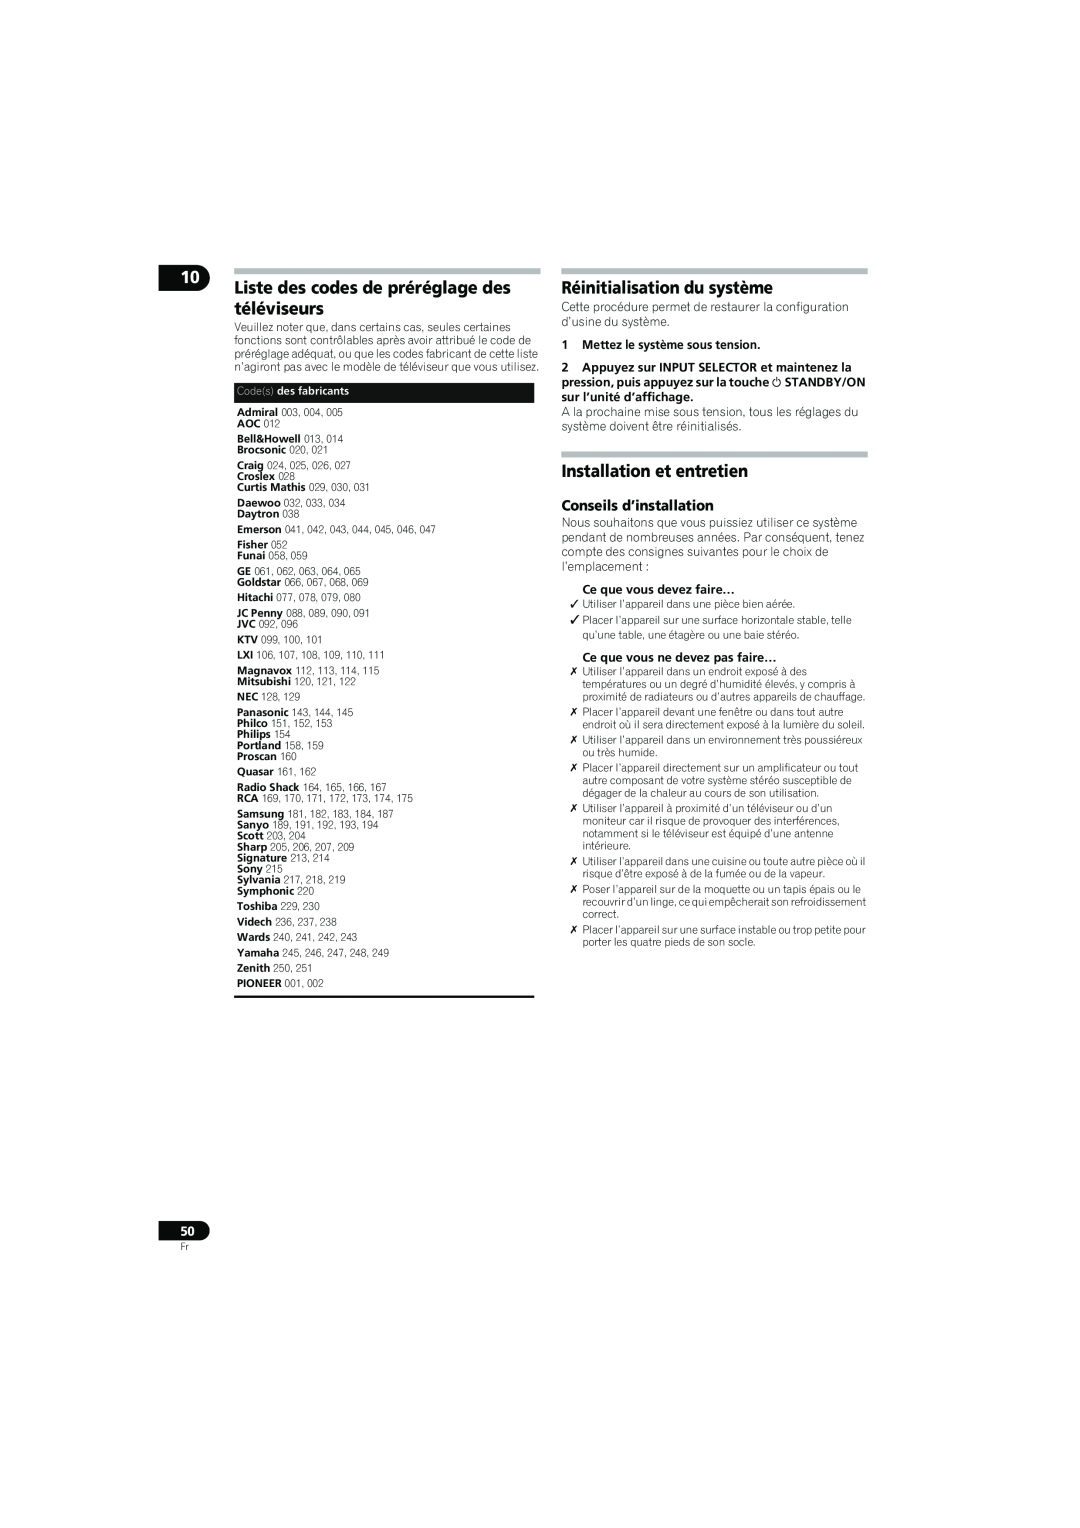 Pioneer SX-LX70SW Liste des codes de préréglage des téléviseurs, Réinitialisation du système, Installation et entretien 